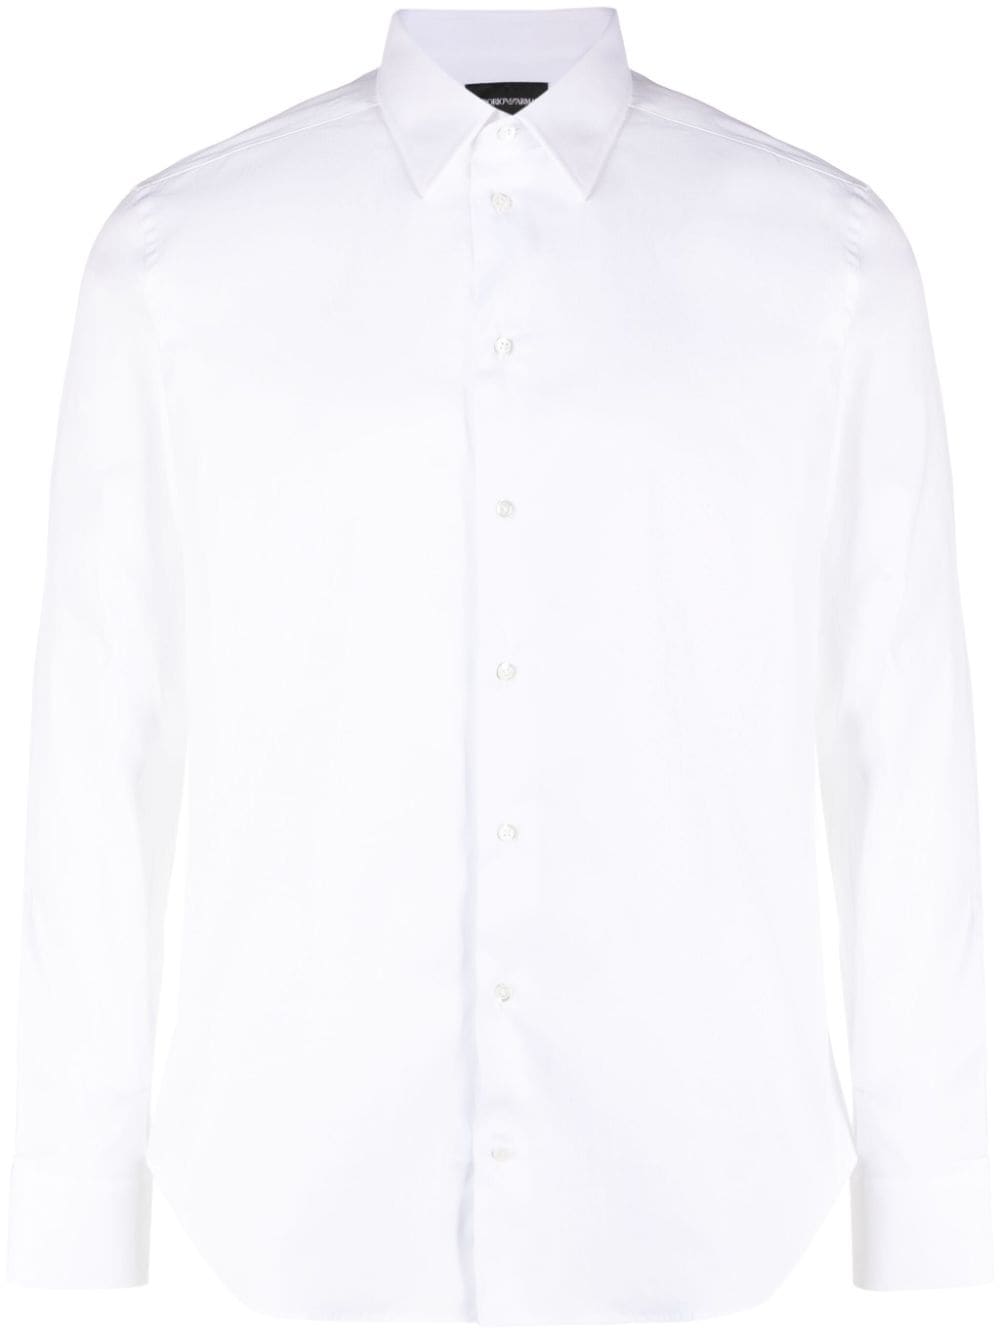 Emporio Armani Hemd mit klassischem Kragen - Weiß